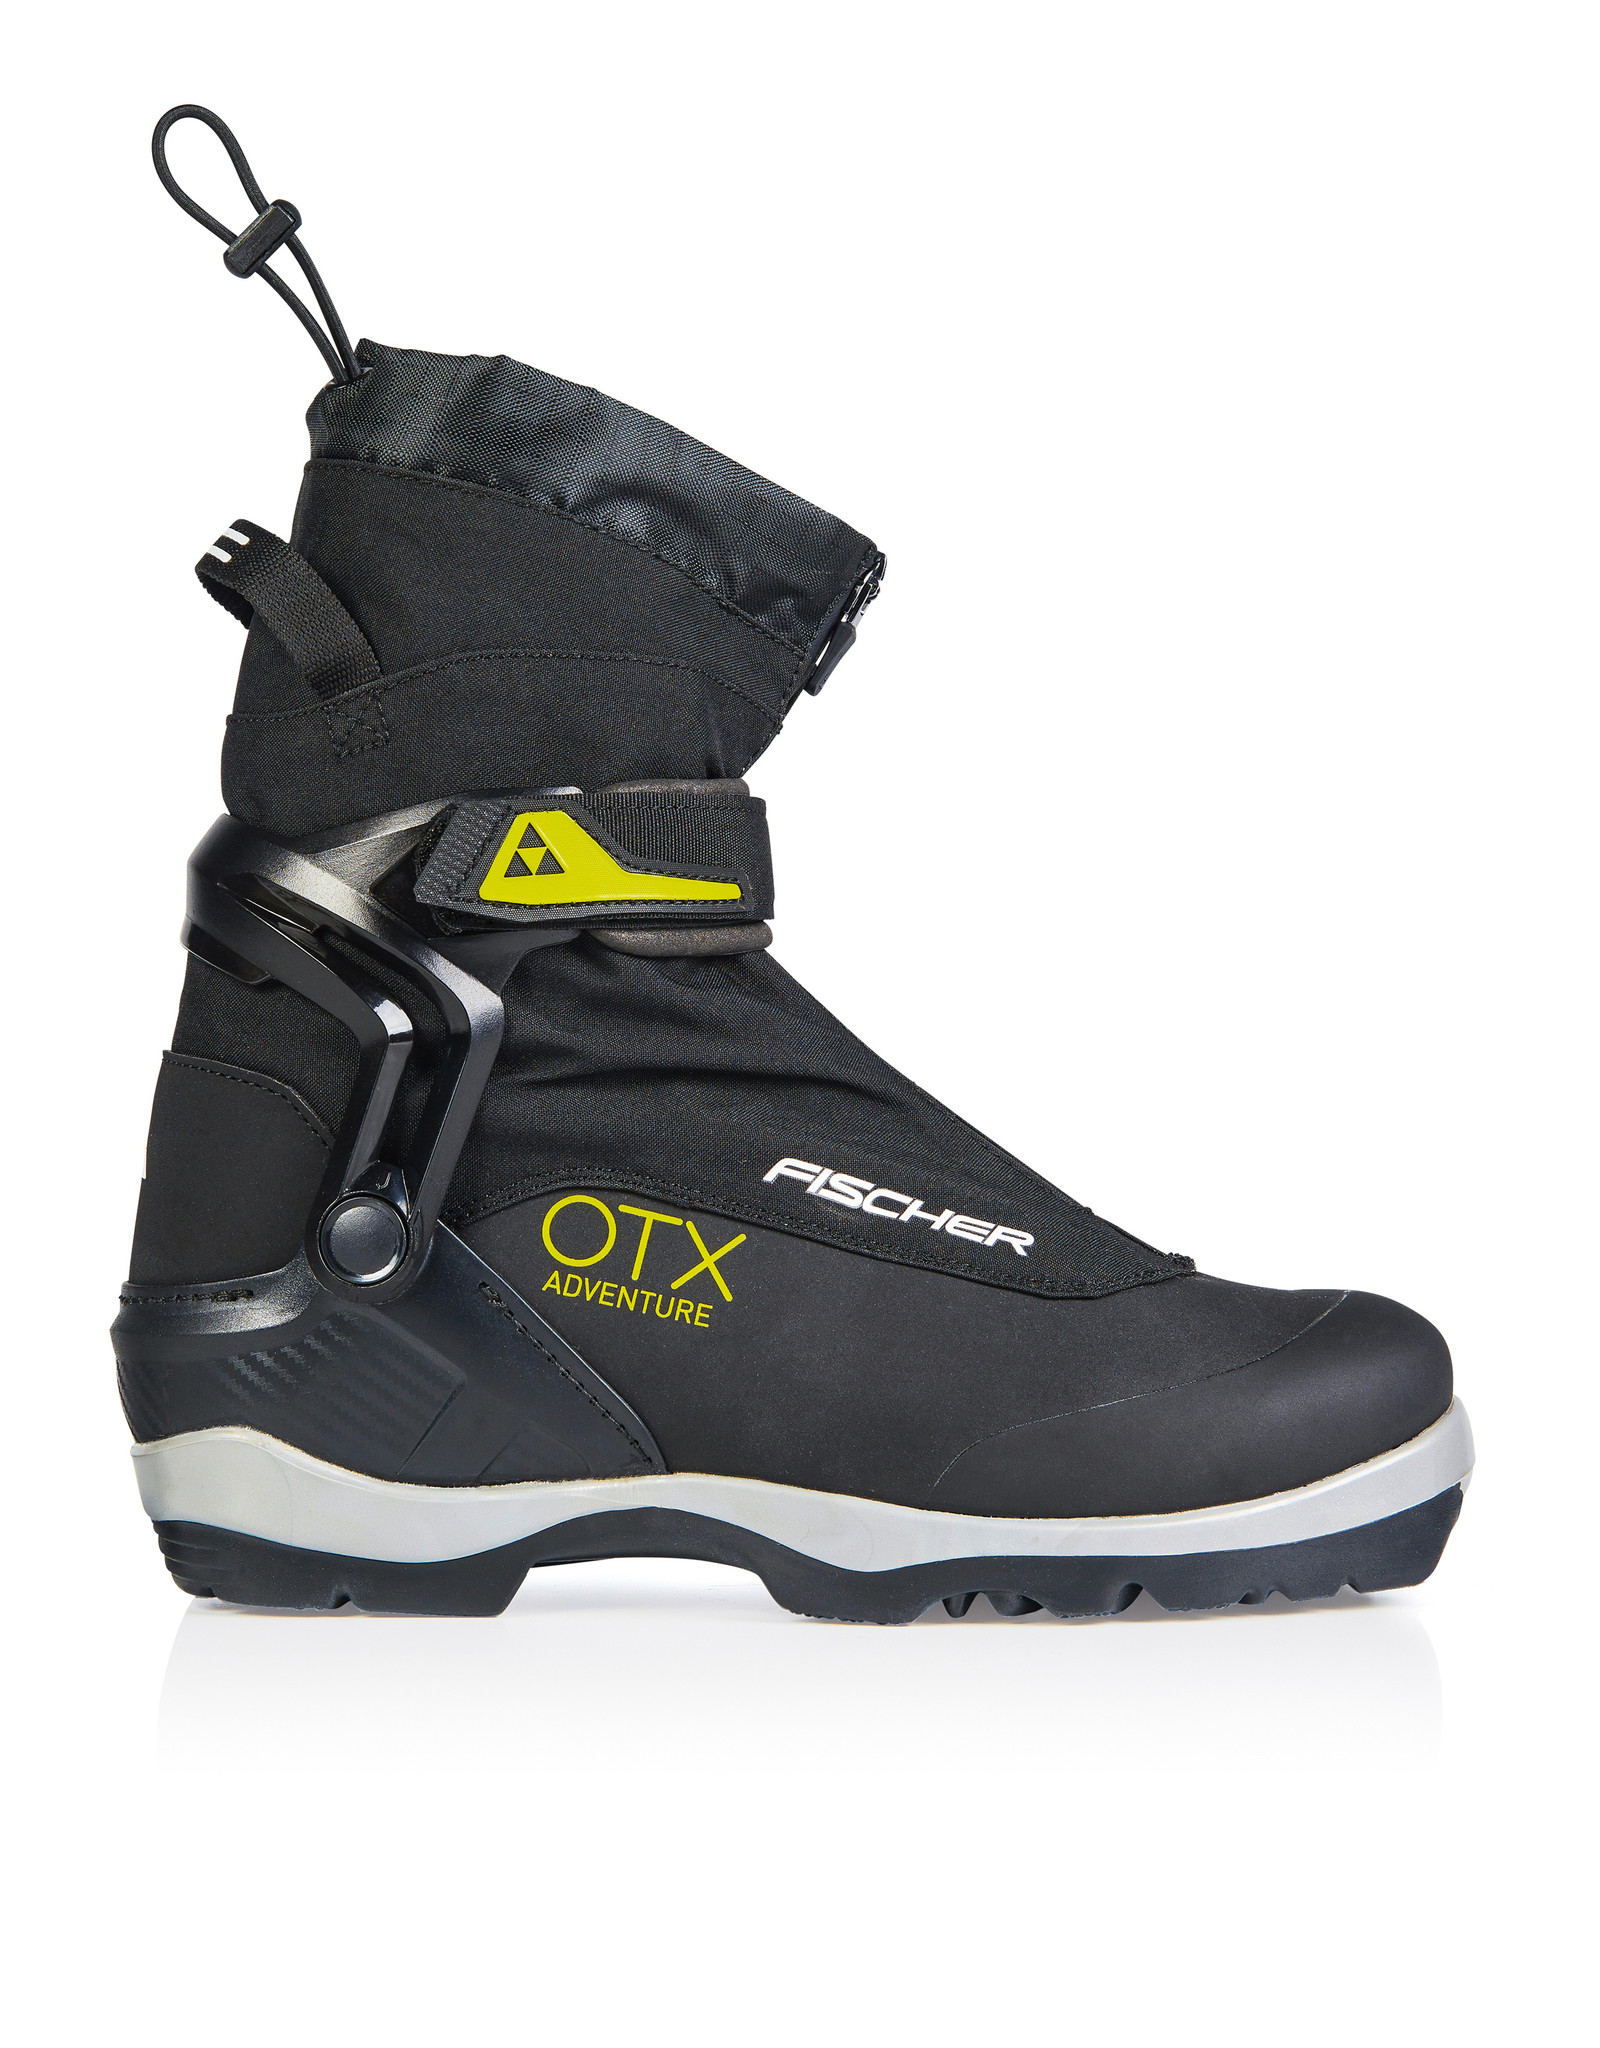 Fischer Fischer 2022 OTX Adventure BC Ski Boots